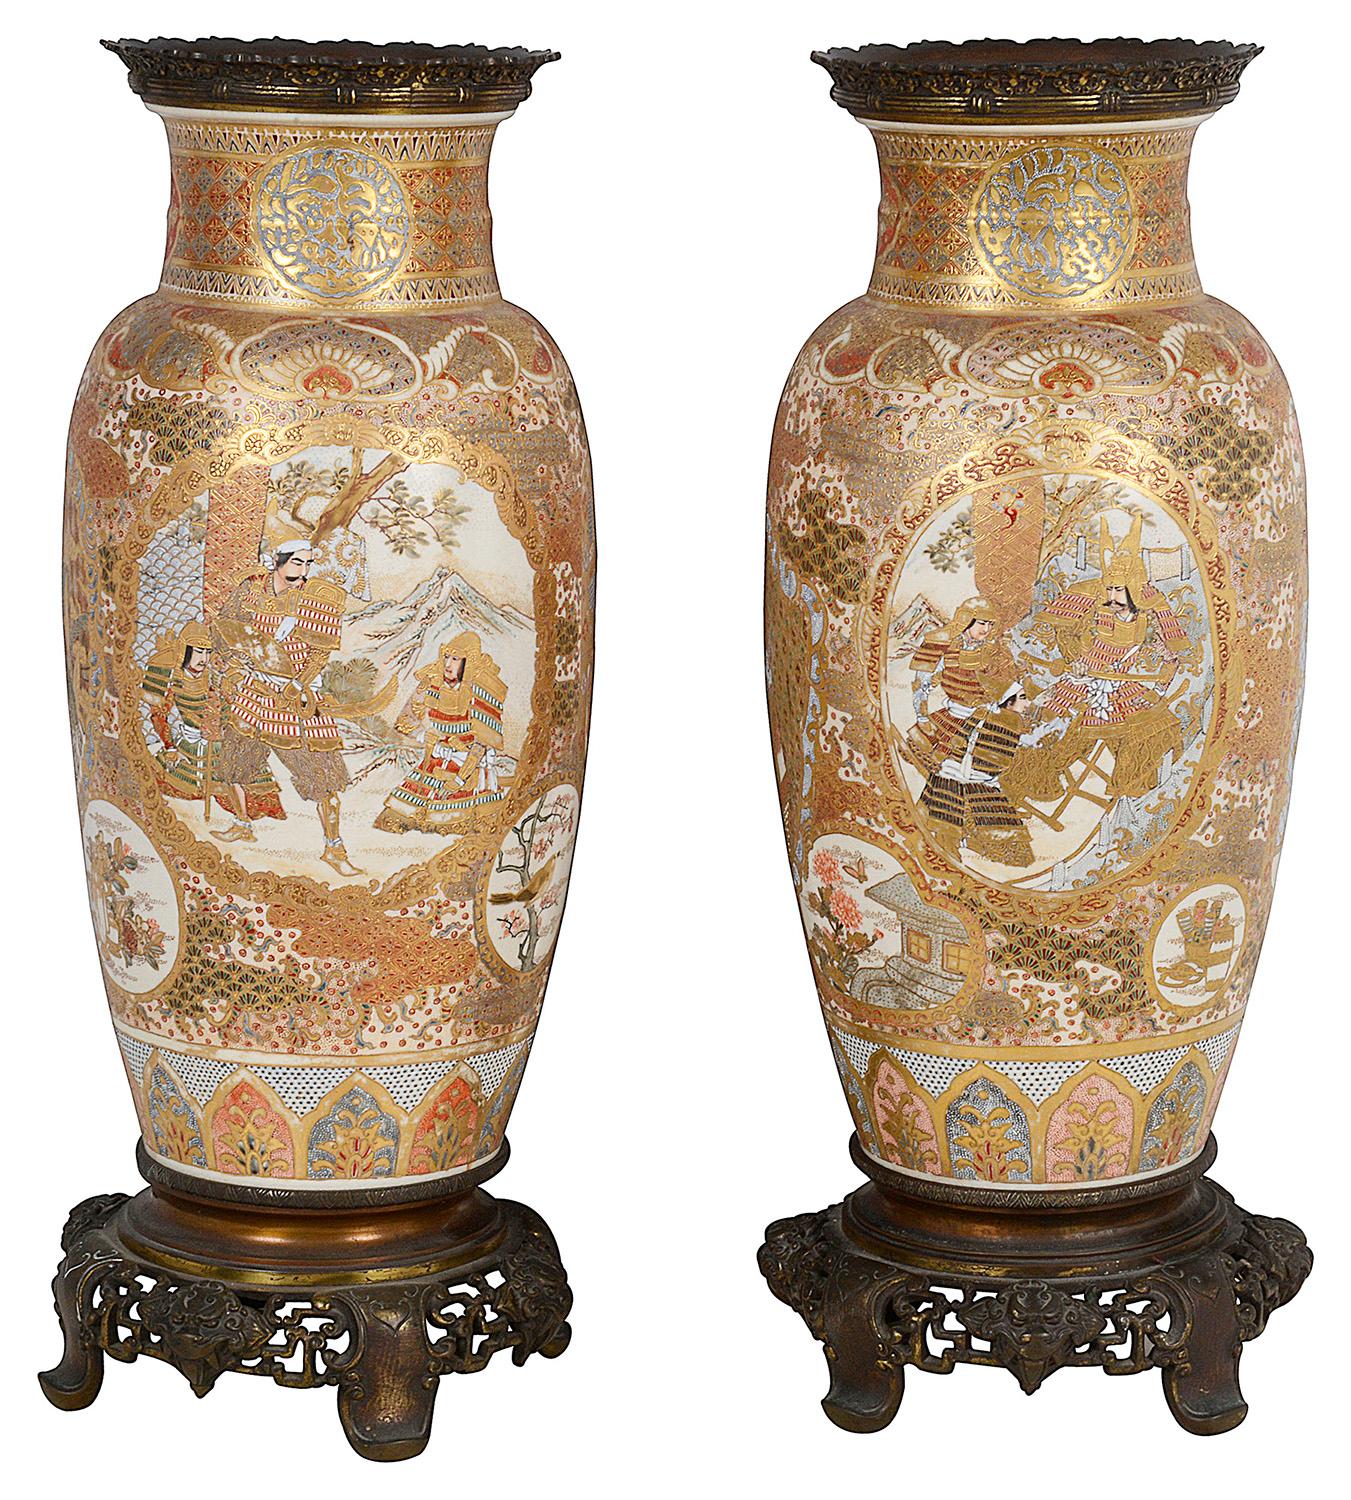 Paire de vases / lampes en porcelaine de Satsuma de la période Meiji (1868-1912) de très bonne qualité. 
Chacune d'entre elles est ornée d'un magnifique motif classique doré, avec des panneaux peints à la main en médaillon représentant diverses